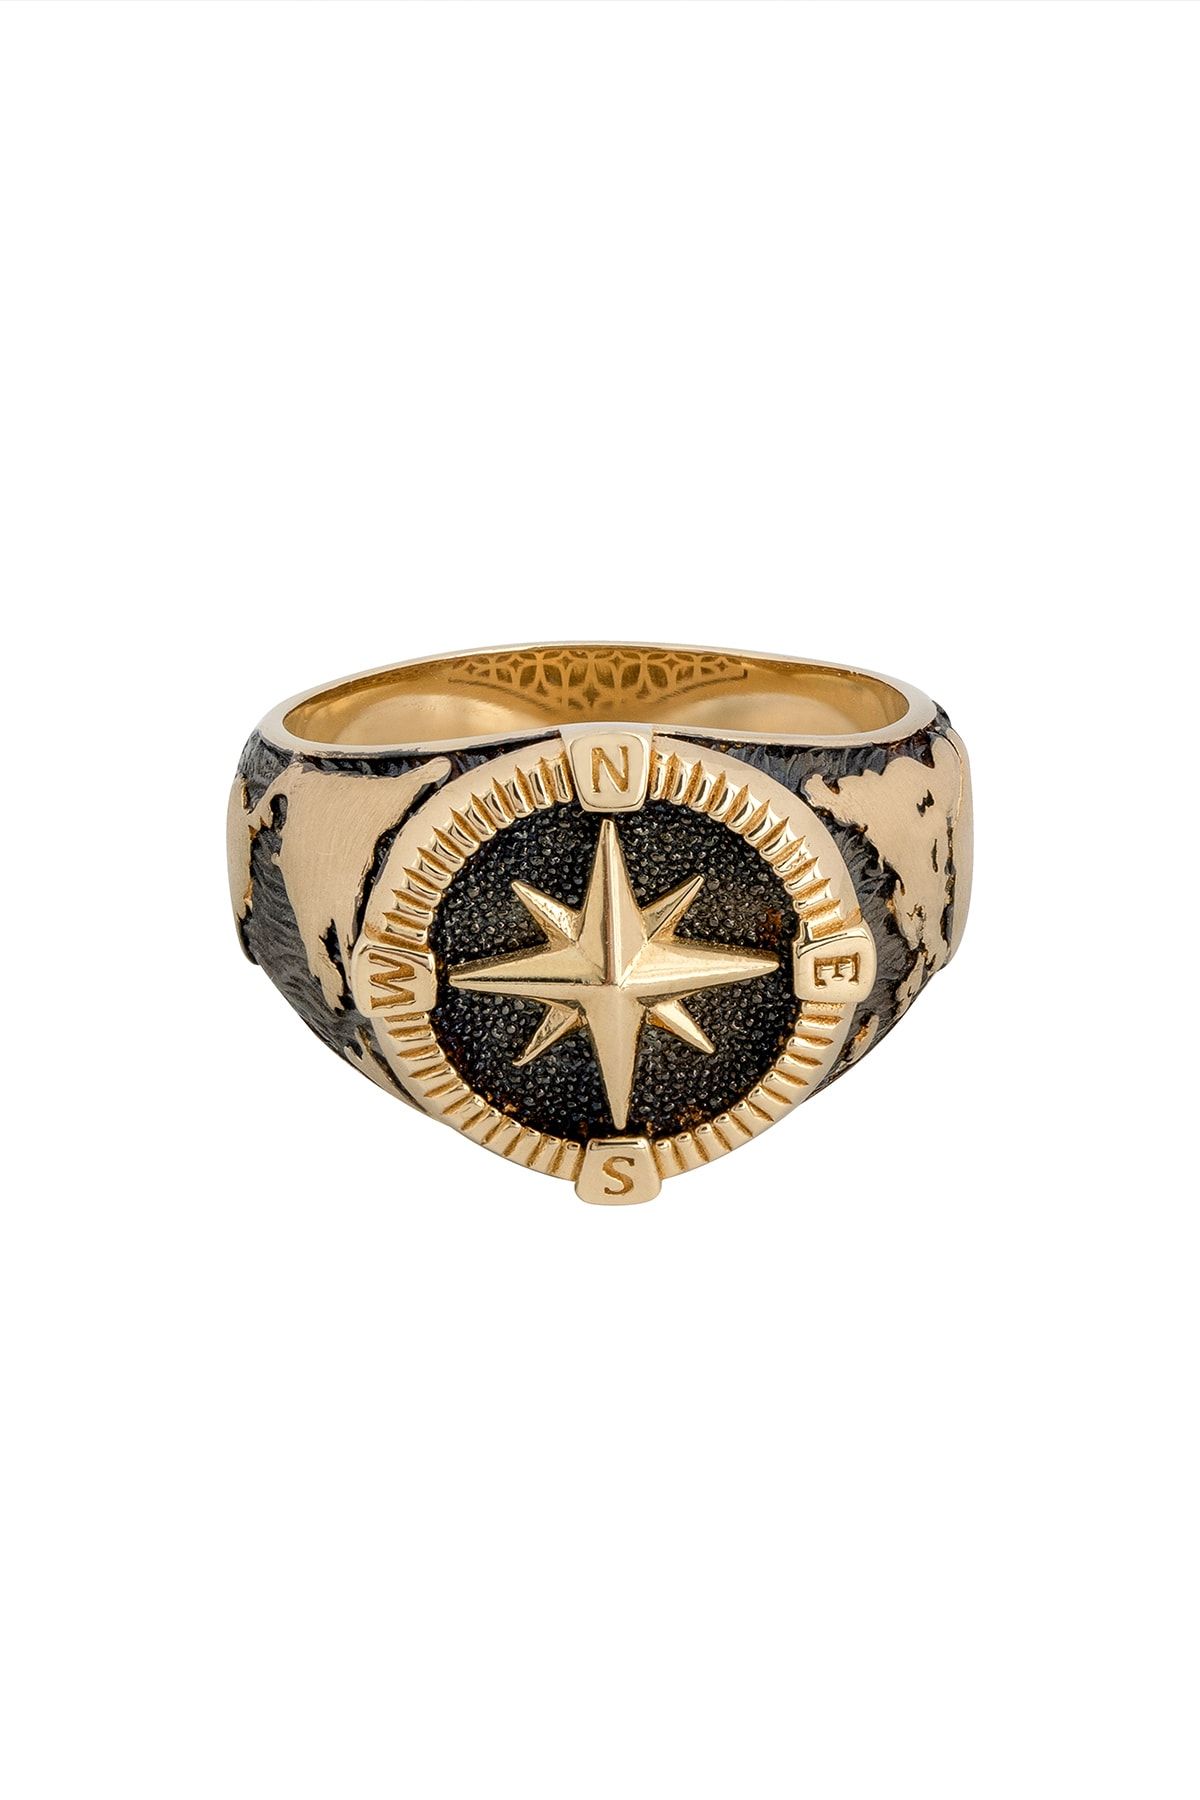 Uşaklıhafız 1945 14 Ayar Altın Kabartmalı Tasarım Denizci Pusulası Erkek Yüzüğü